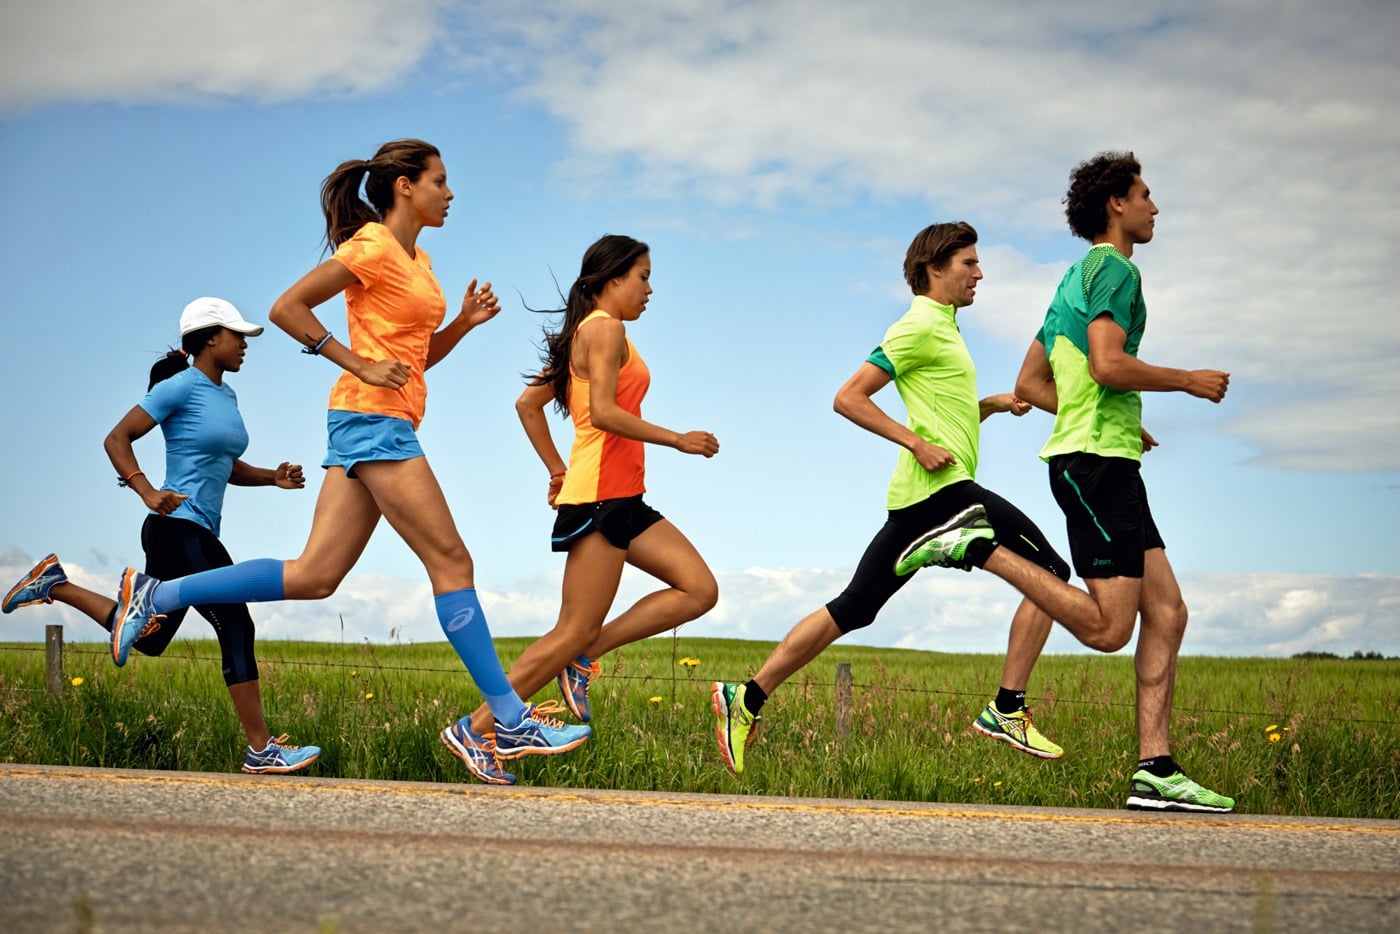 chạy bộ có tác dụng gì, tác động ra sao tới sức khỏe?